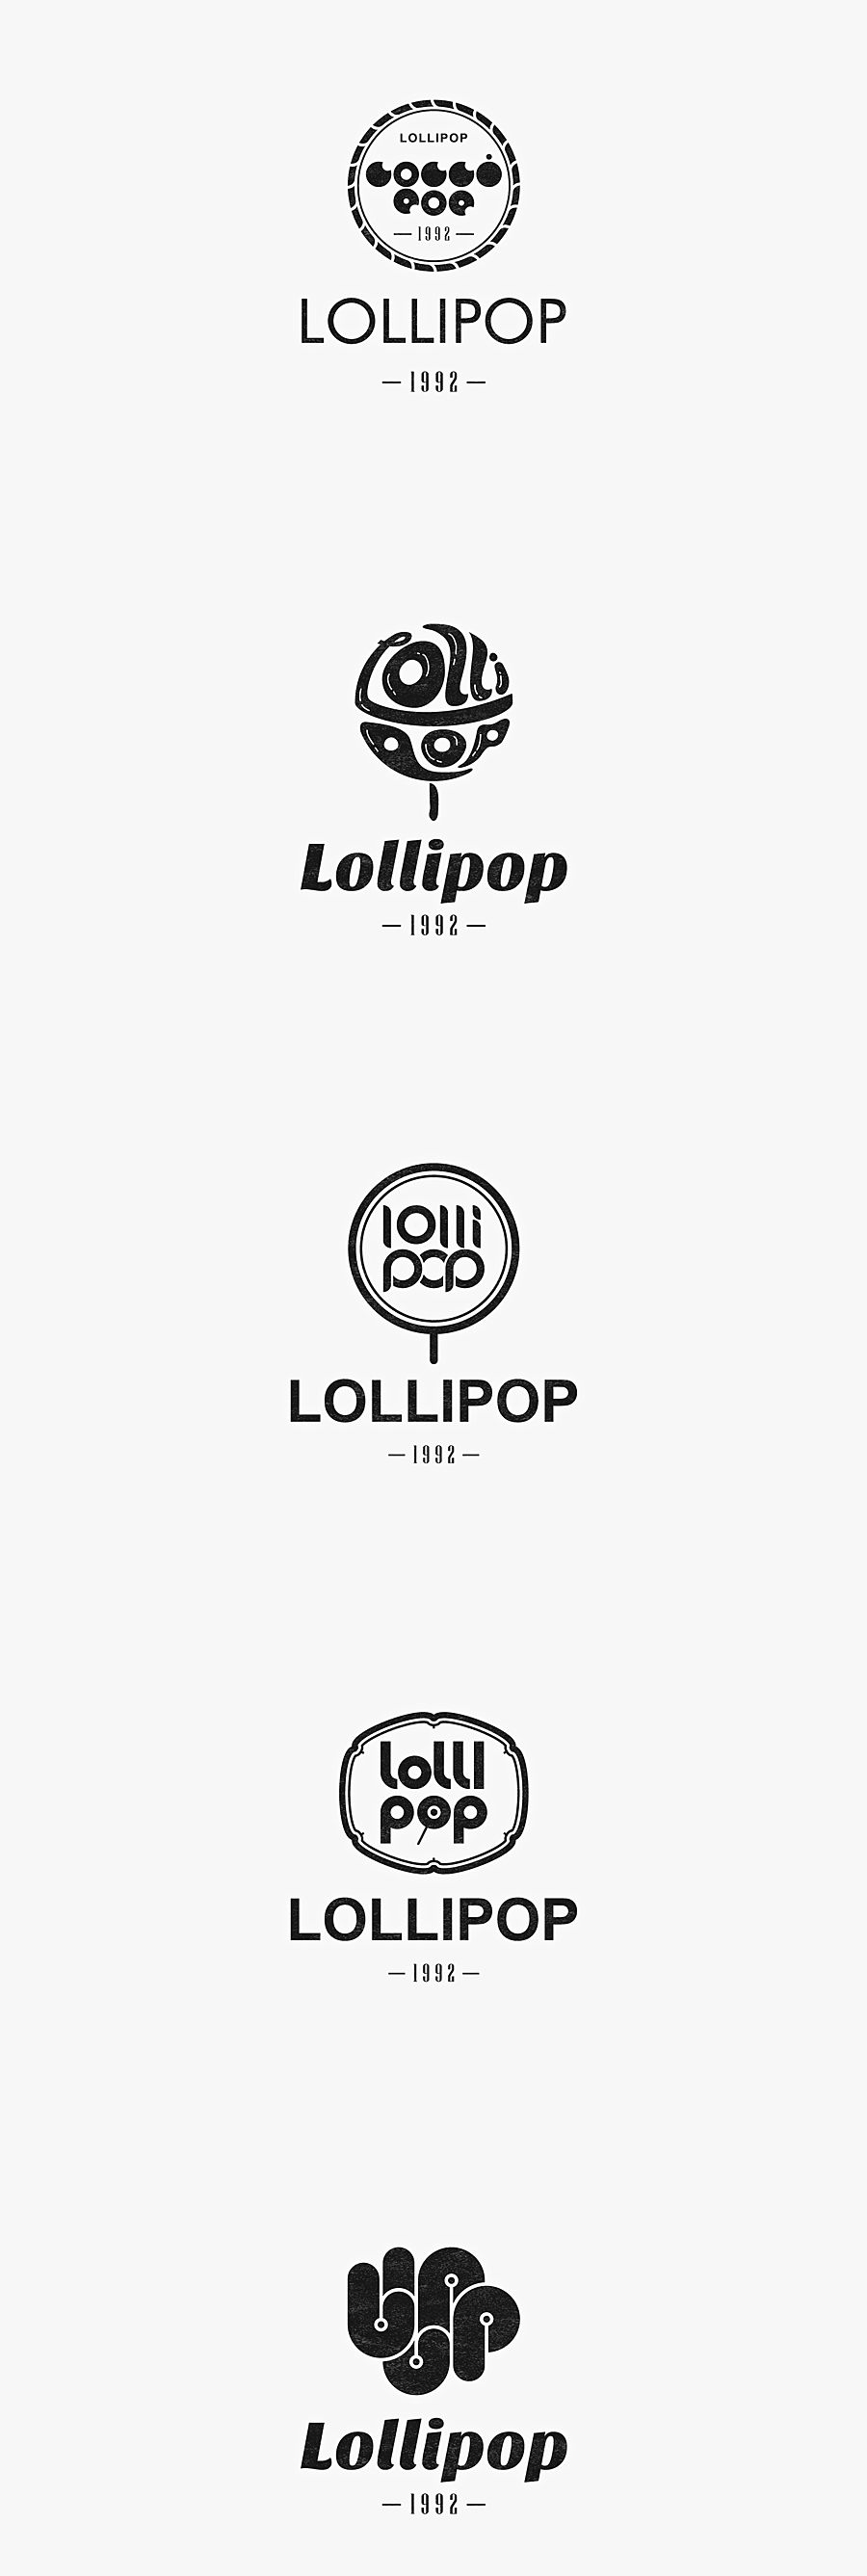 女装品牌标志设计案例,,lollipop | 女装品牌标志设计案例